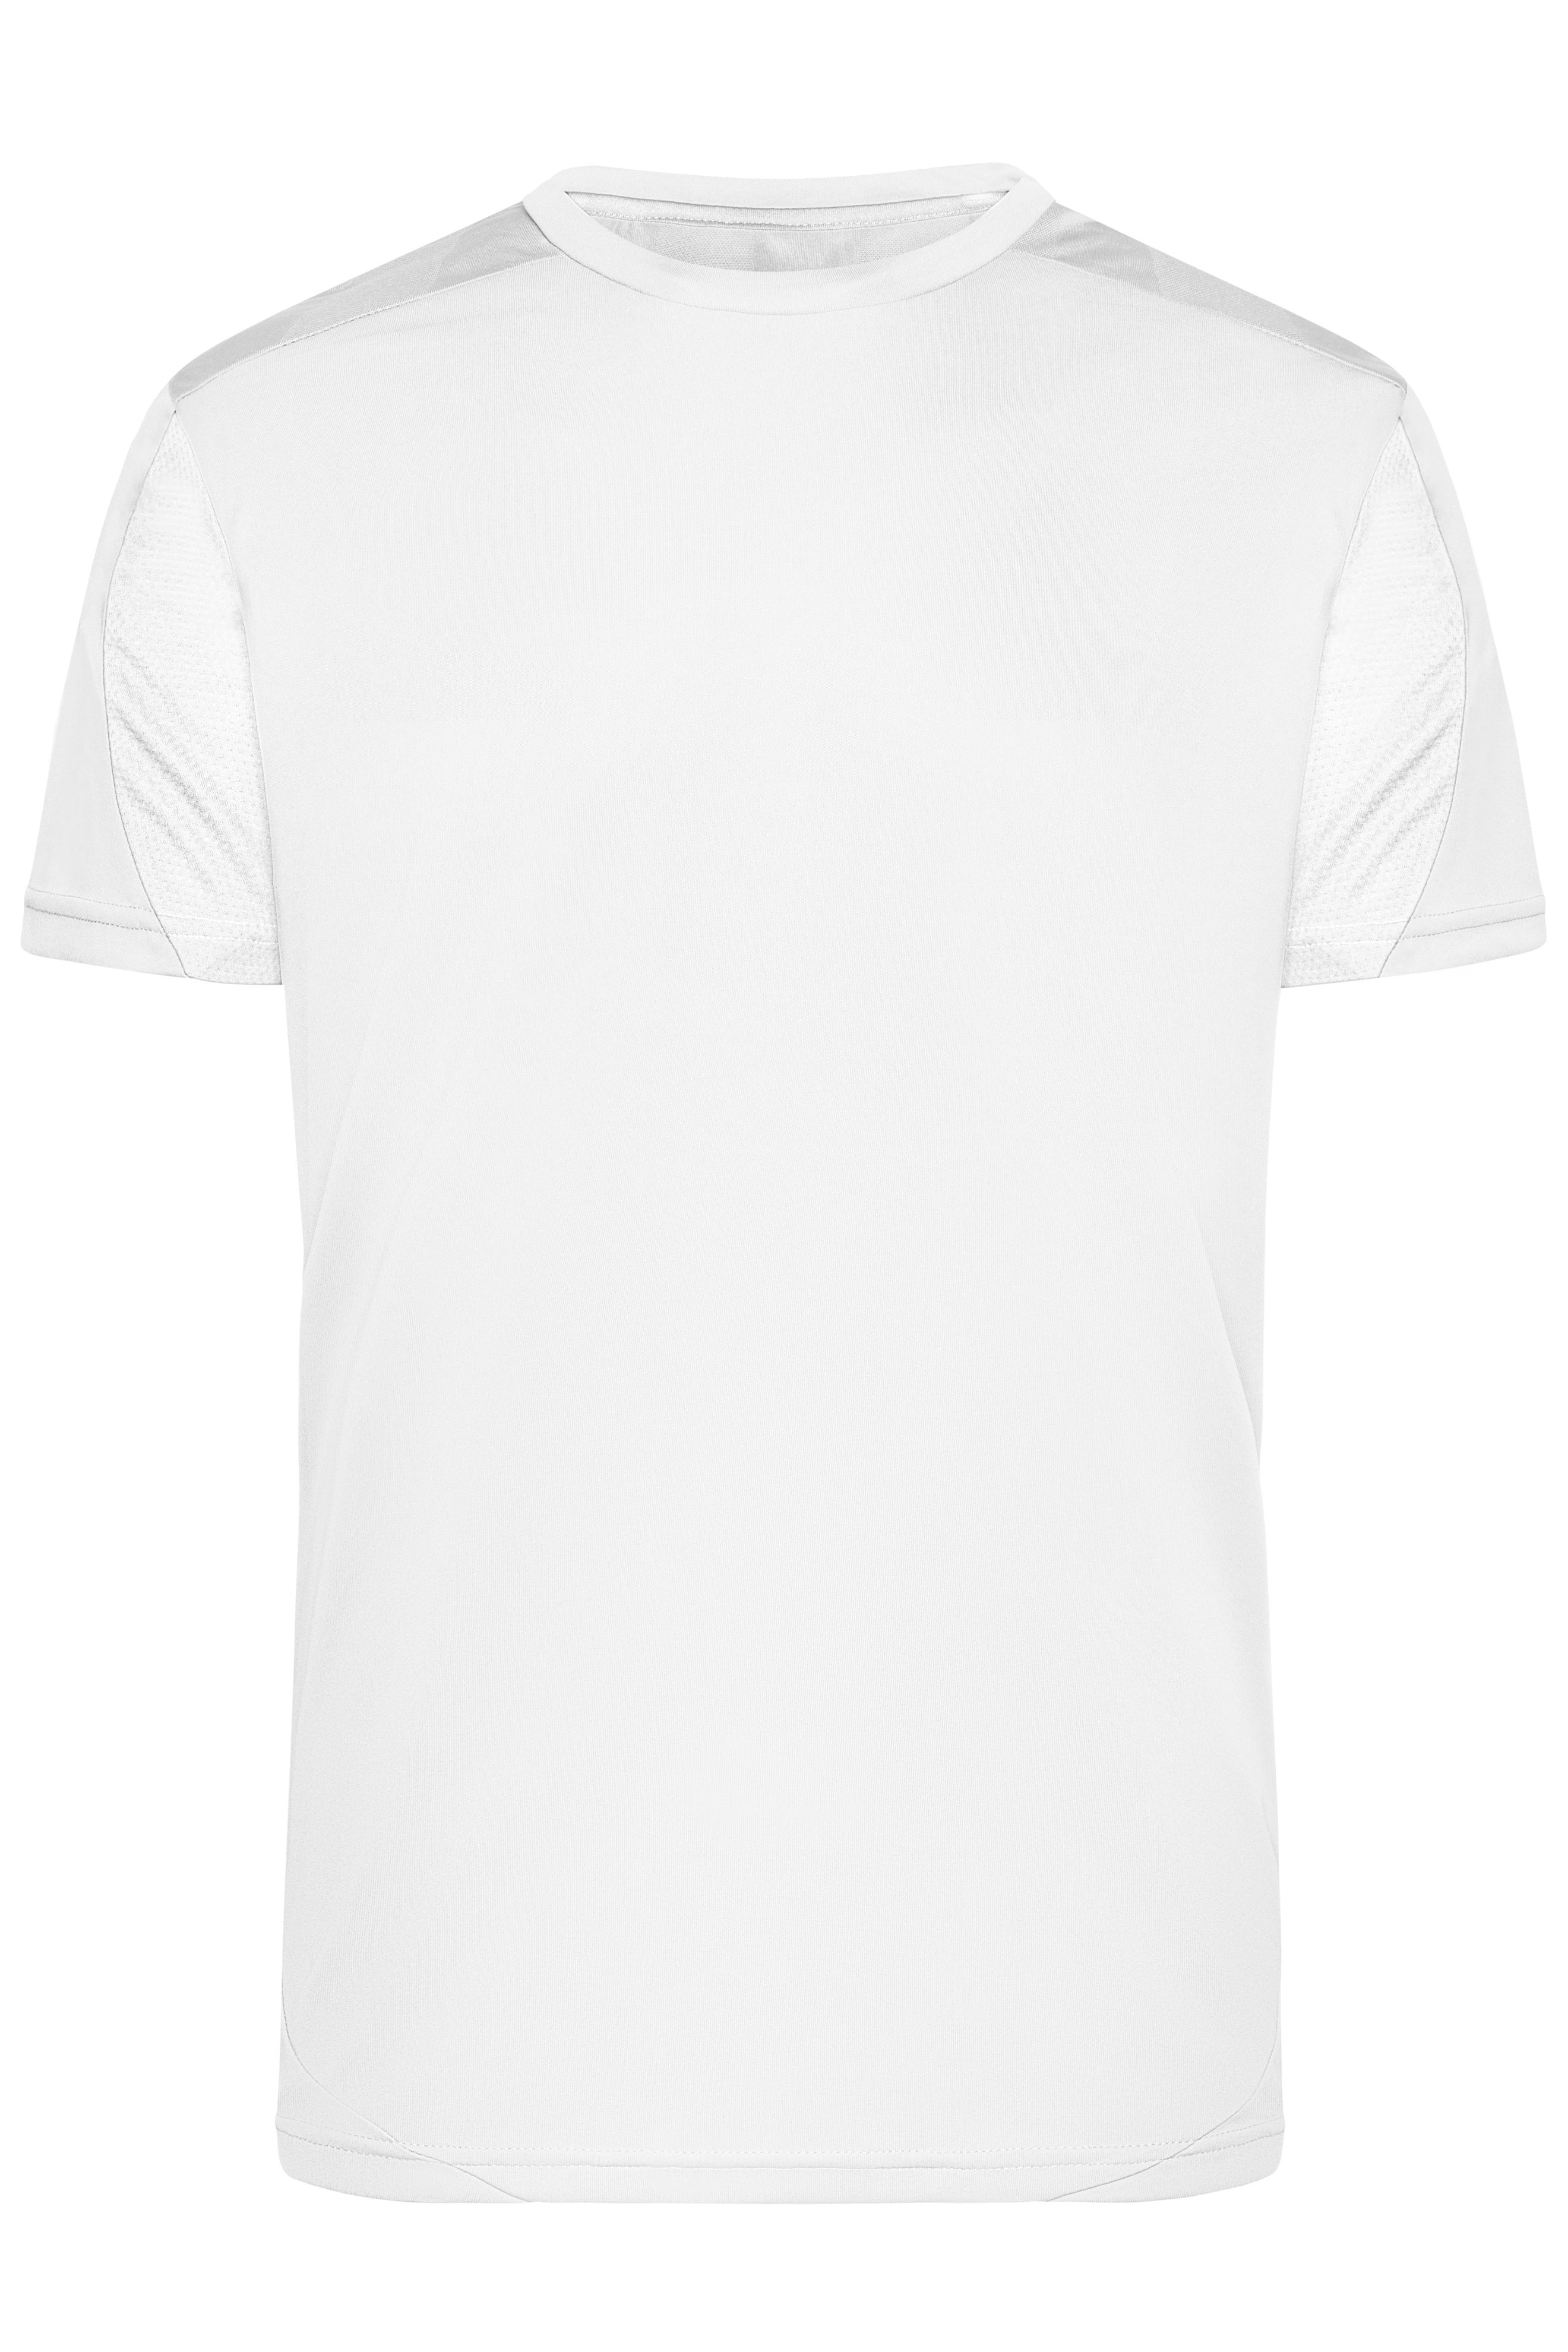 Unisex Tournament Team-Shirt White/white-Daiber